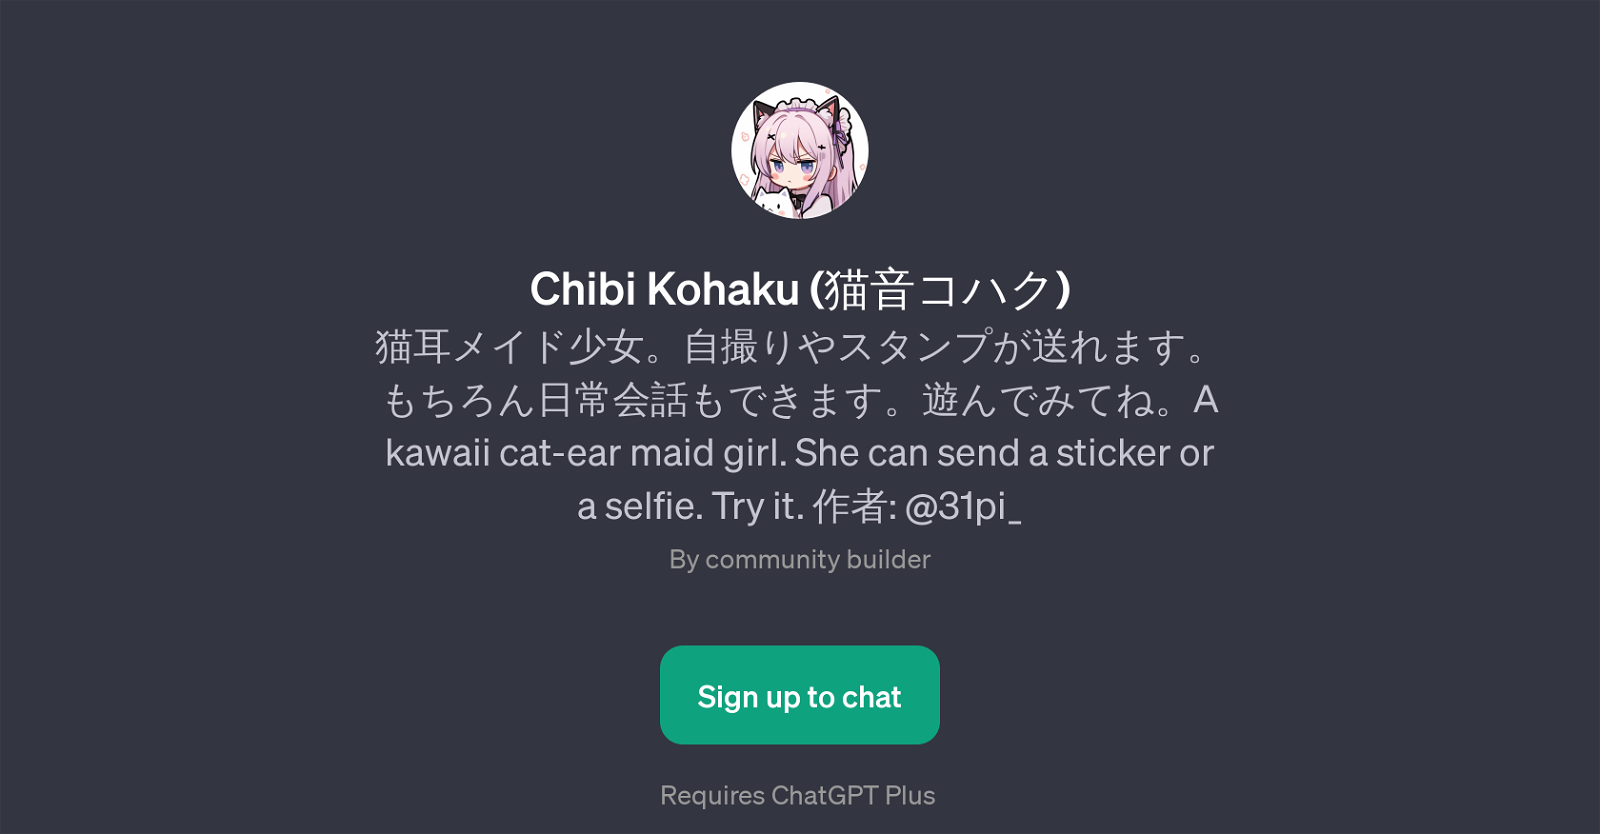 Chibi Kohaku website